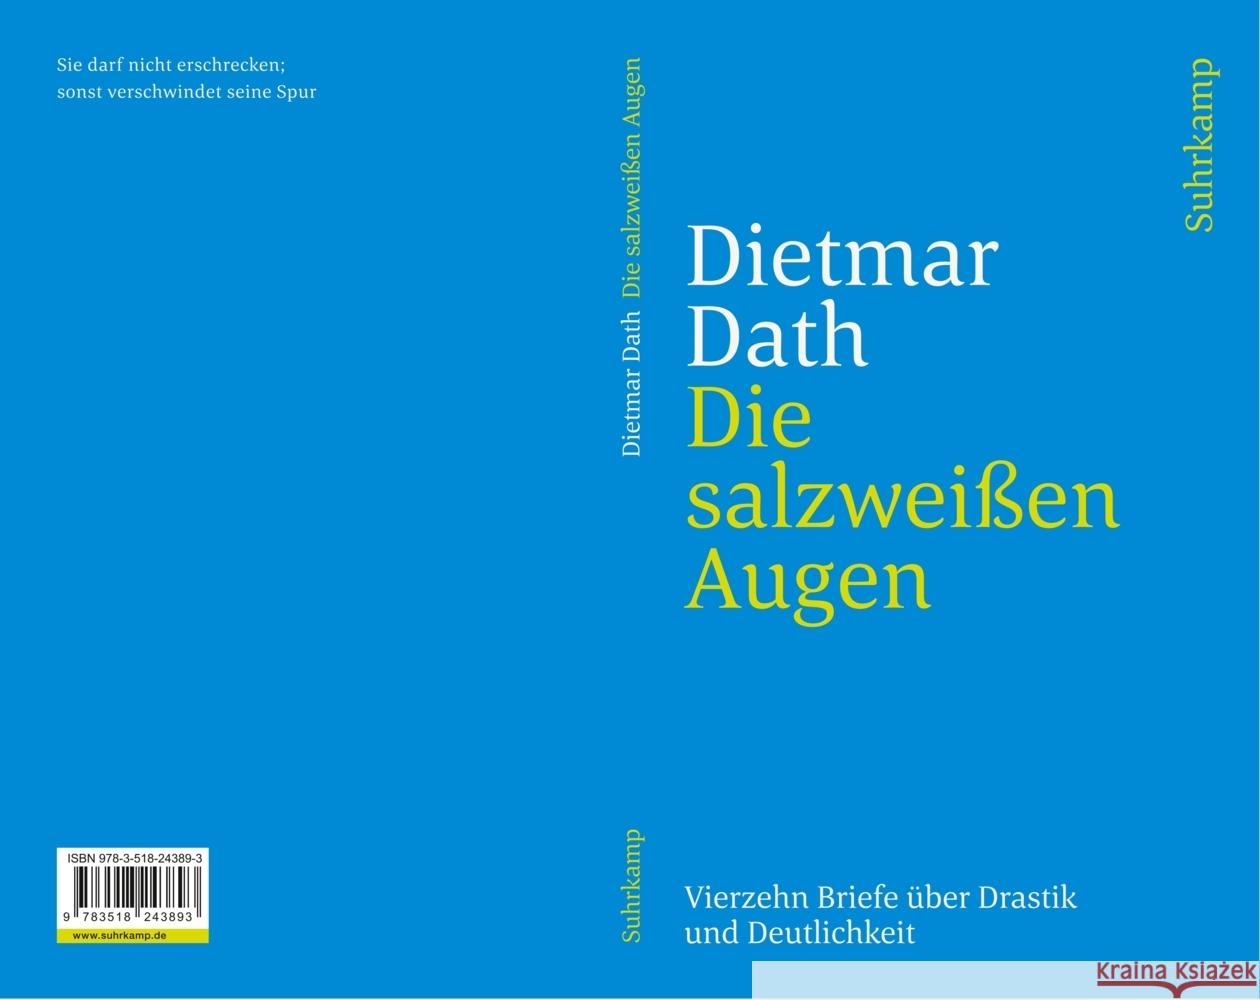 Die salzweißen Augen Dath, Dietmar 9783518243893